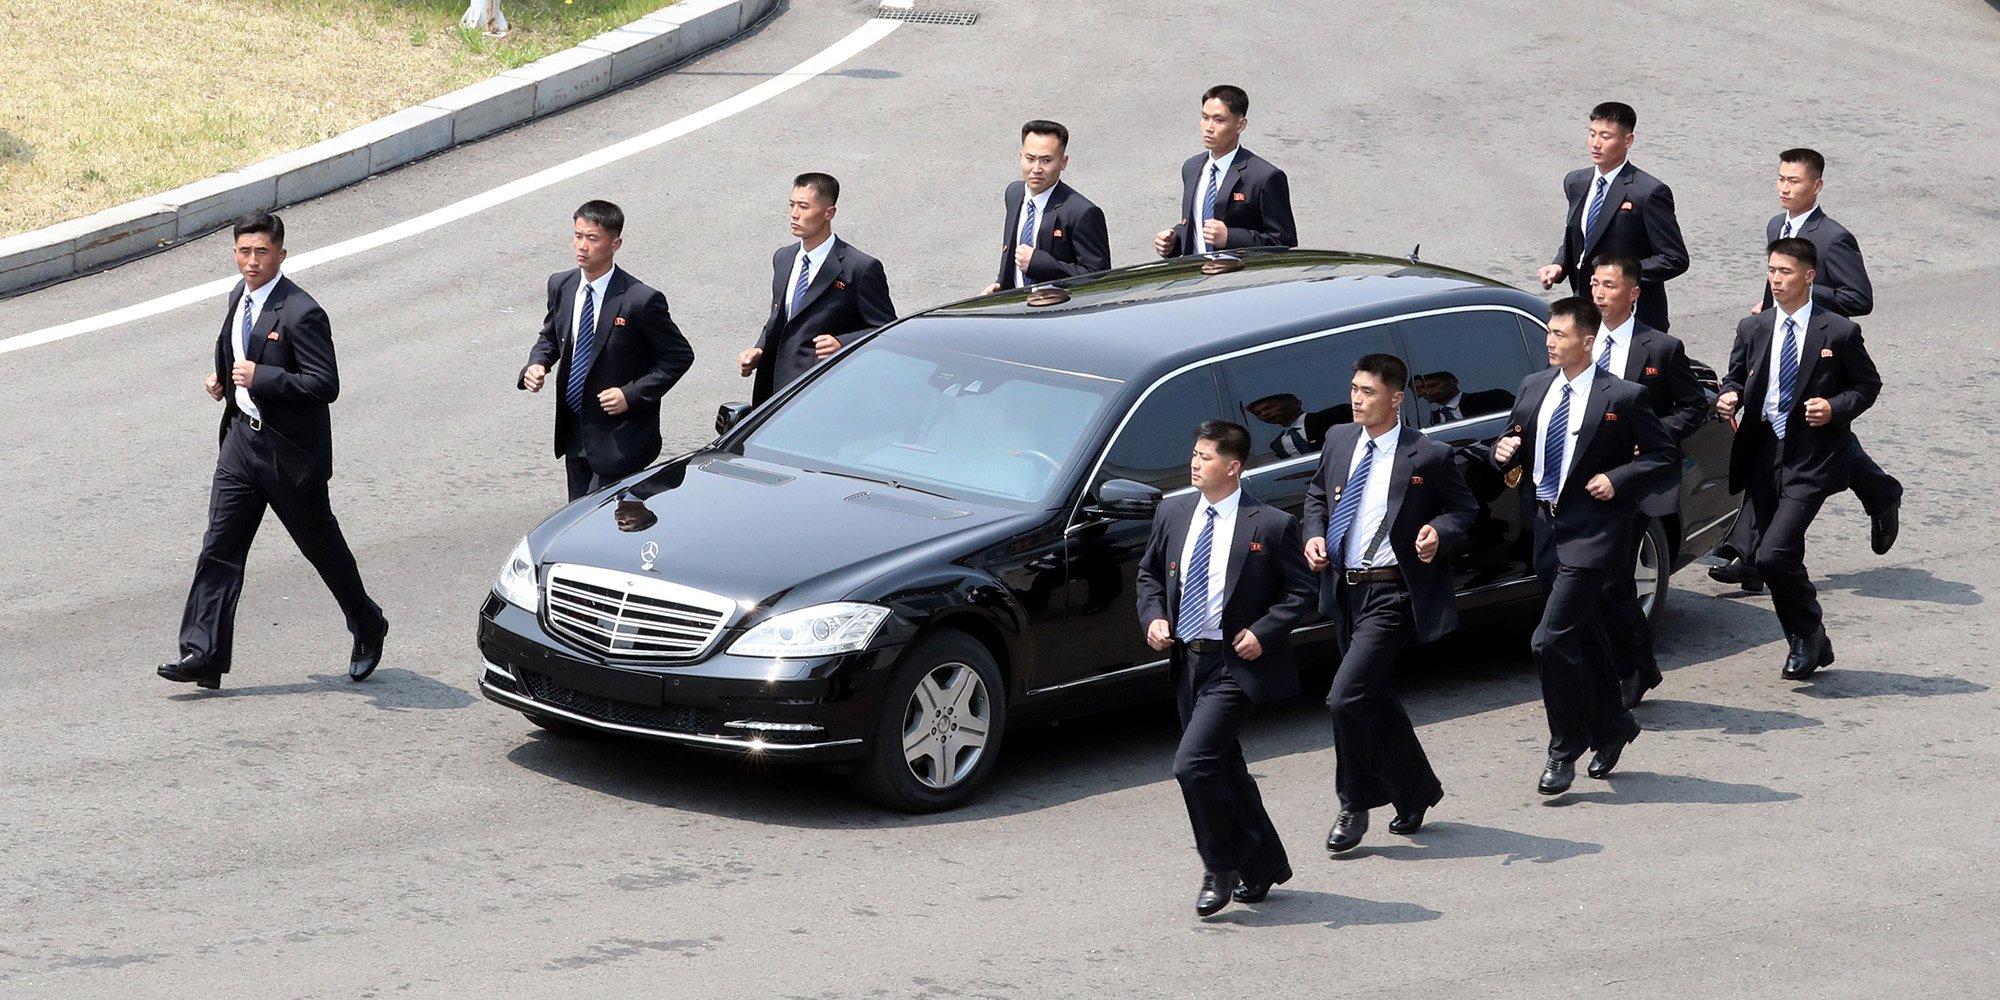 بالفيديو/ حراسة &quot;خيالية&quot; للزعيم الكوري خلال القمة التاريخية...12 عنصراً ركضوا بمحاذاة سيارته!